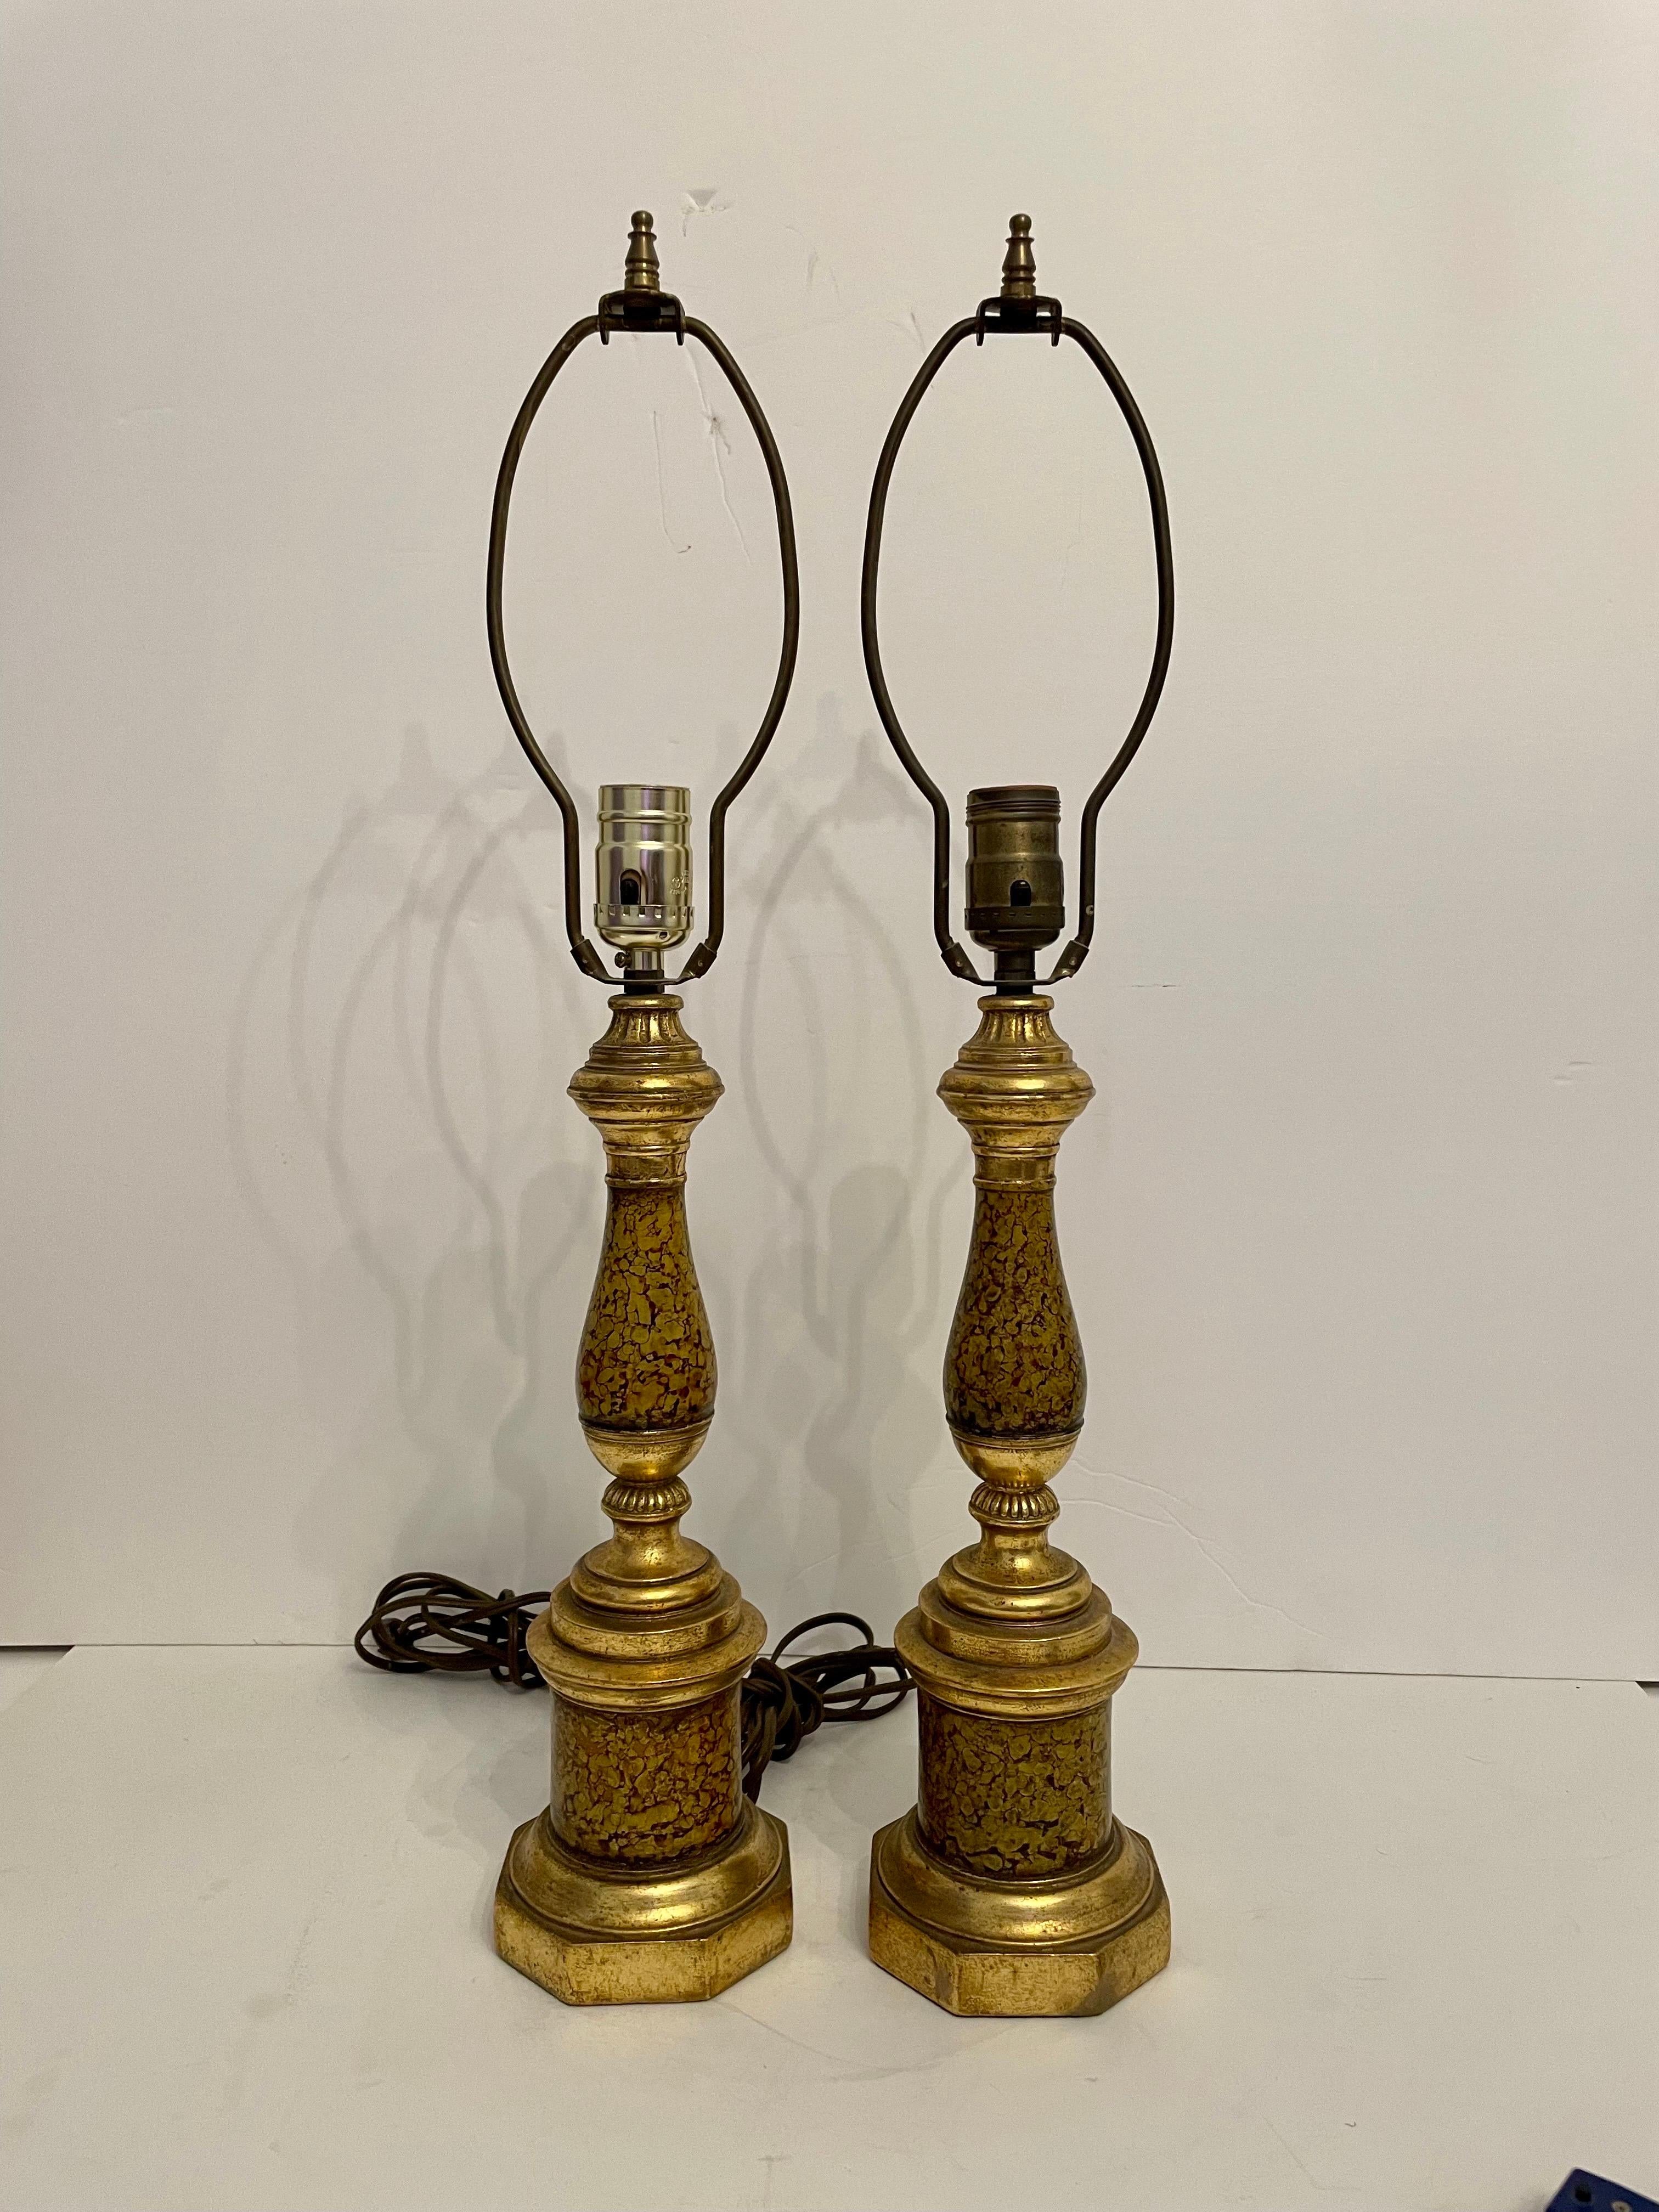 Paar bemalte und vergoldete Borghese Tischlampen. Unberührter Originalzustand mit originalen vergoldeten Streifentönen. Borghese-Aufkleber auf der Unterseite. Sehr gute Qualität. 24